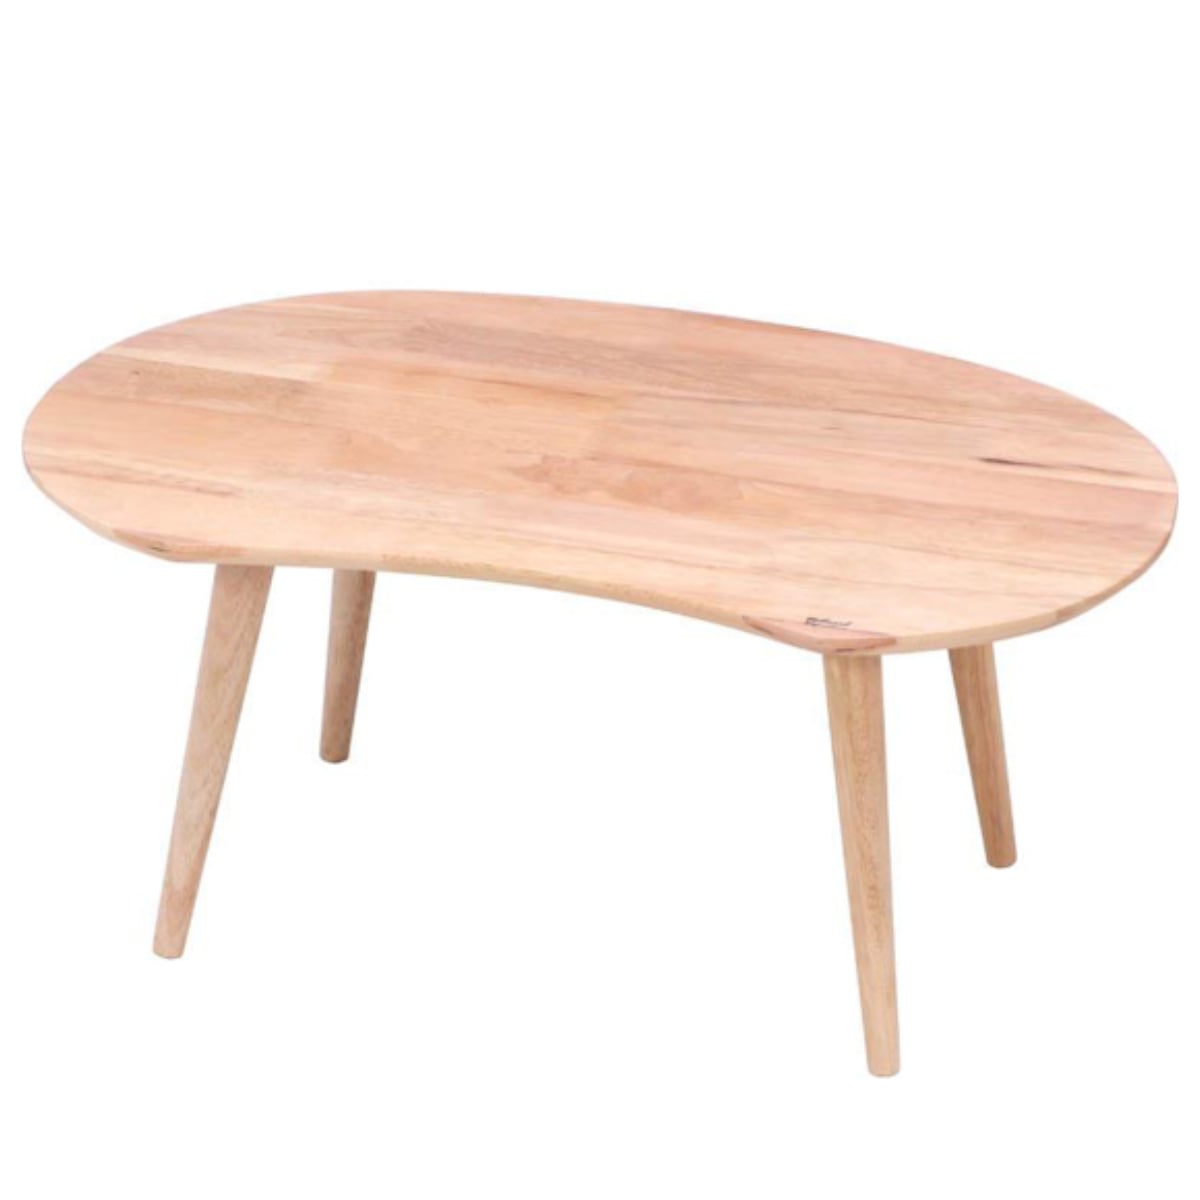 センターテーブル 幅74cm 木製 天然木 ローテーブル ビーンズテーブル